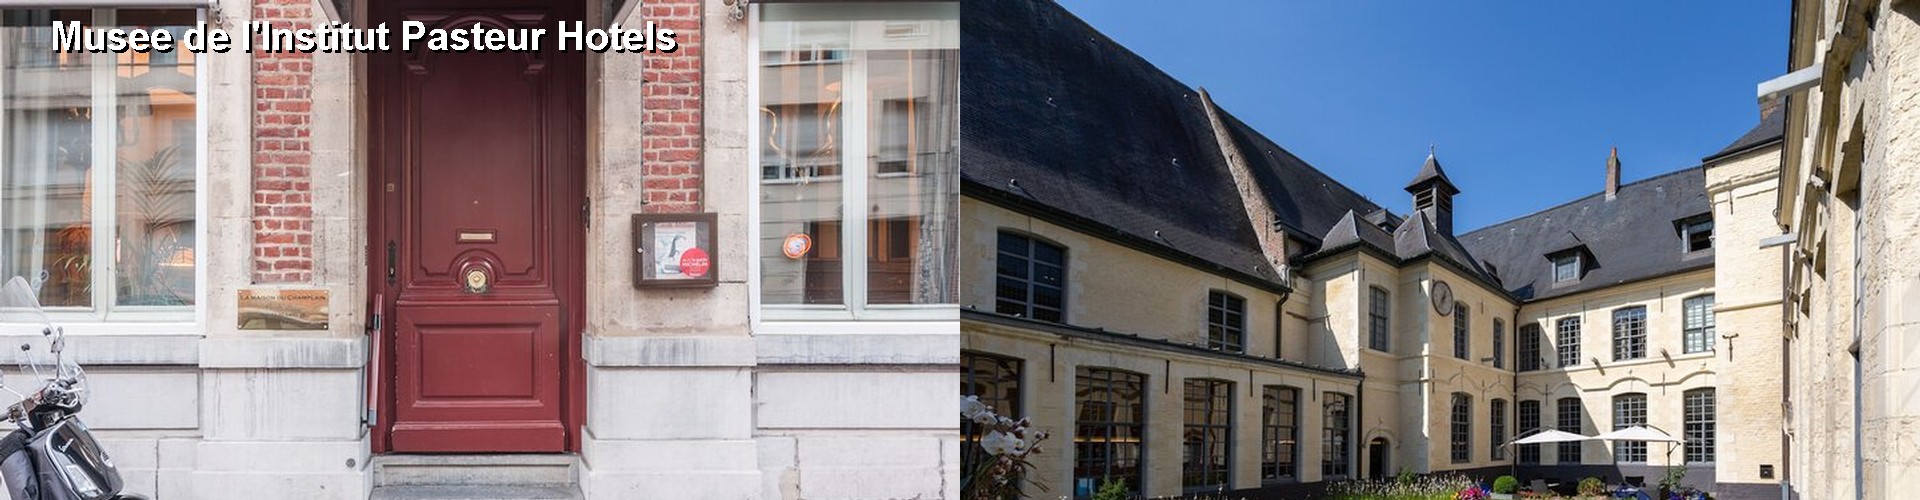 5 Best Hotels near Musee de l'Institut Pasteur